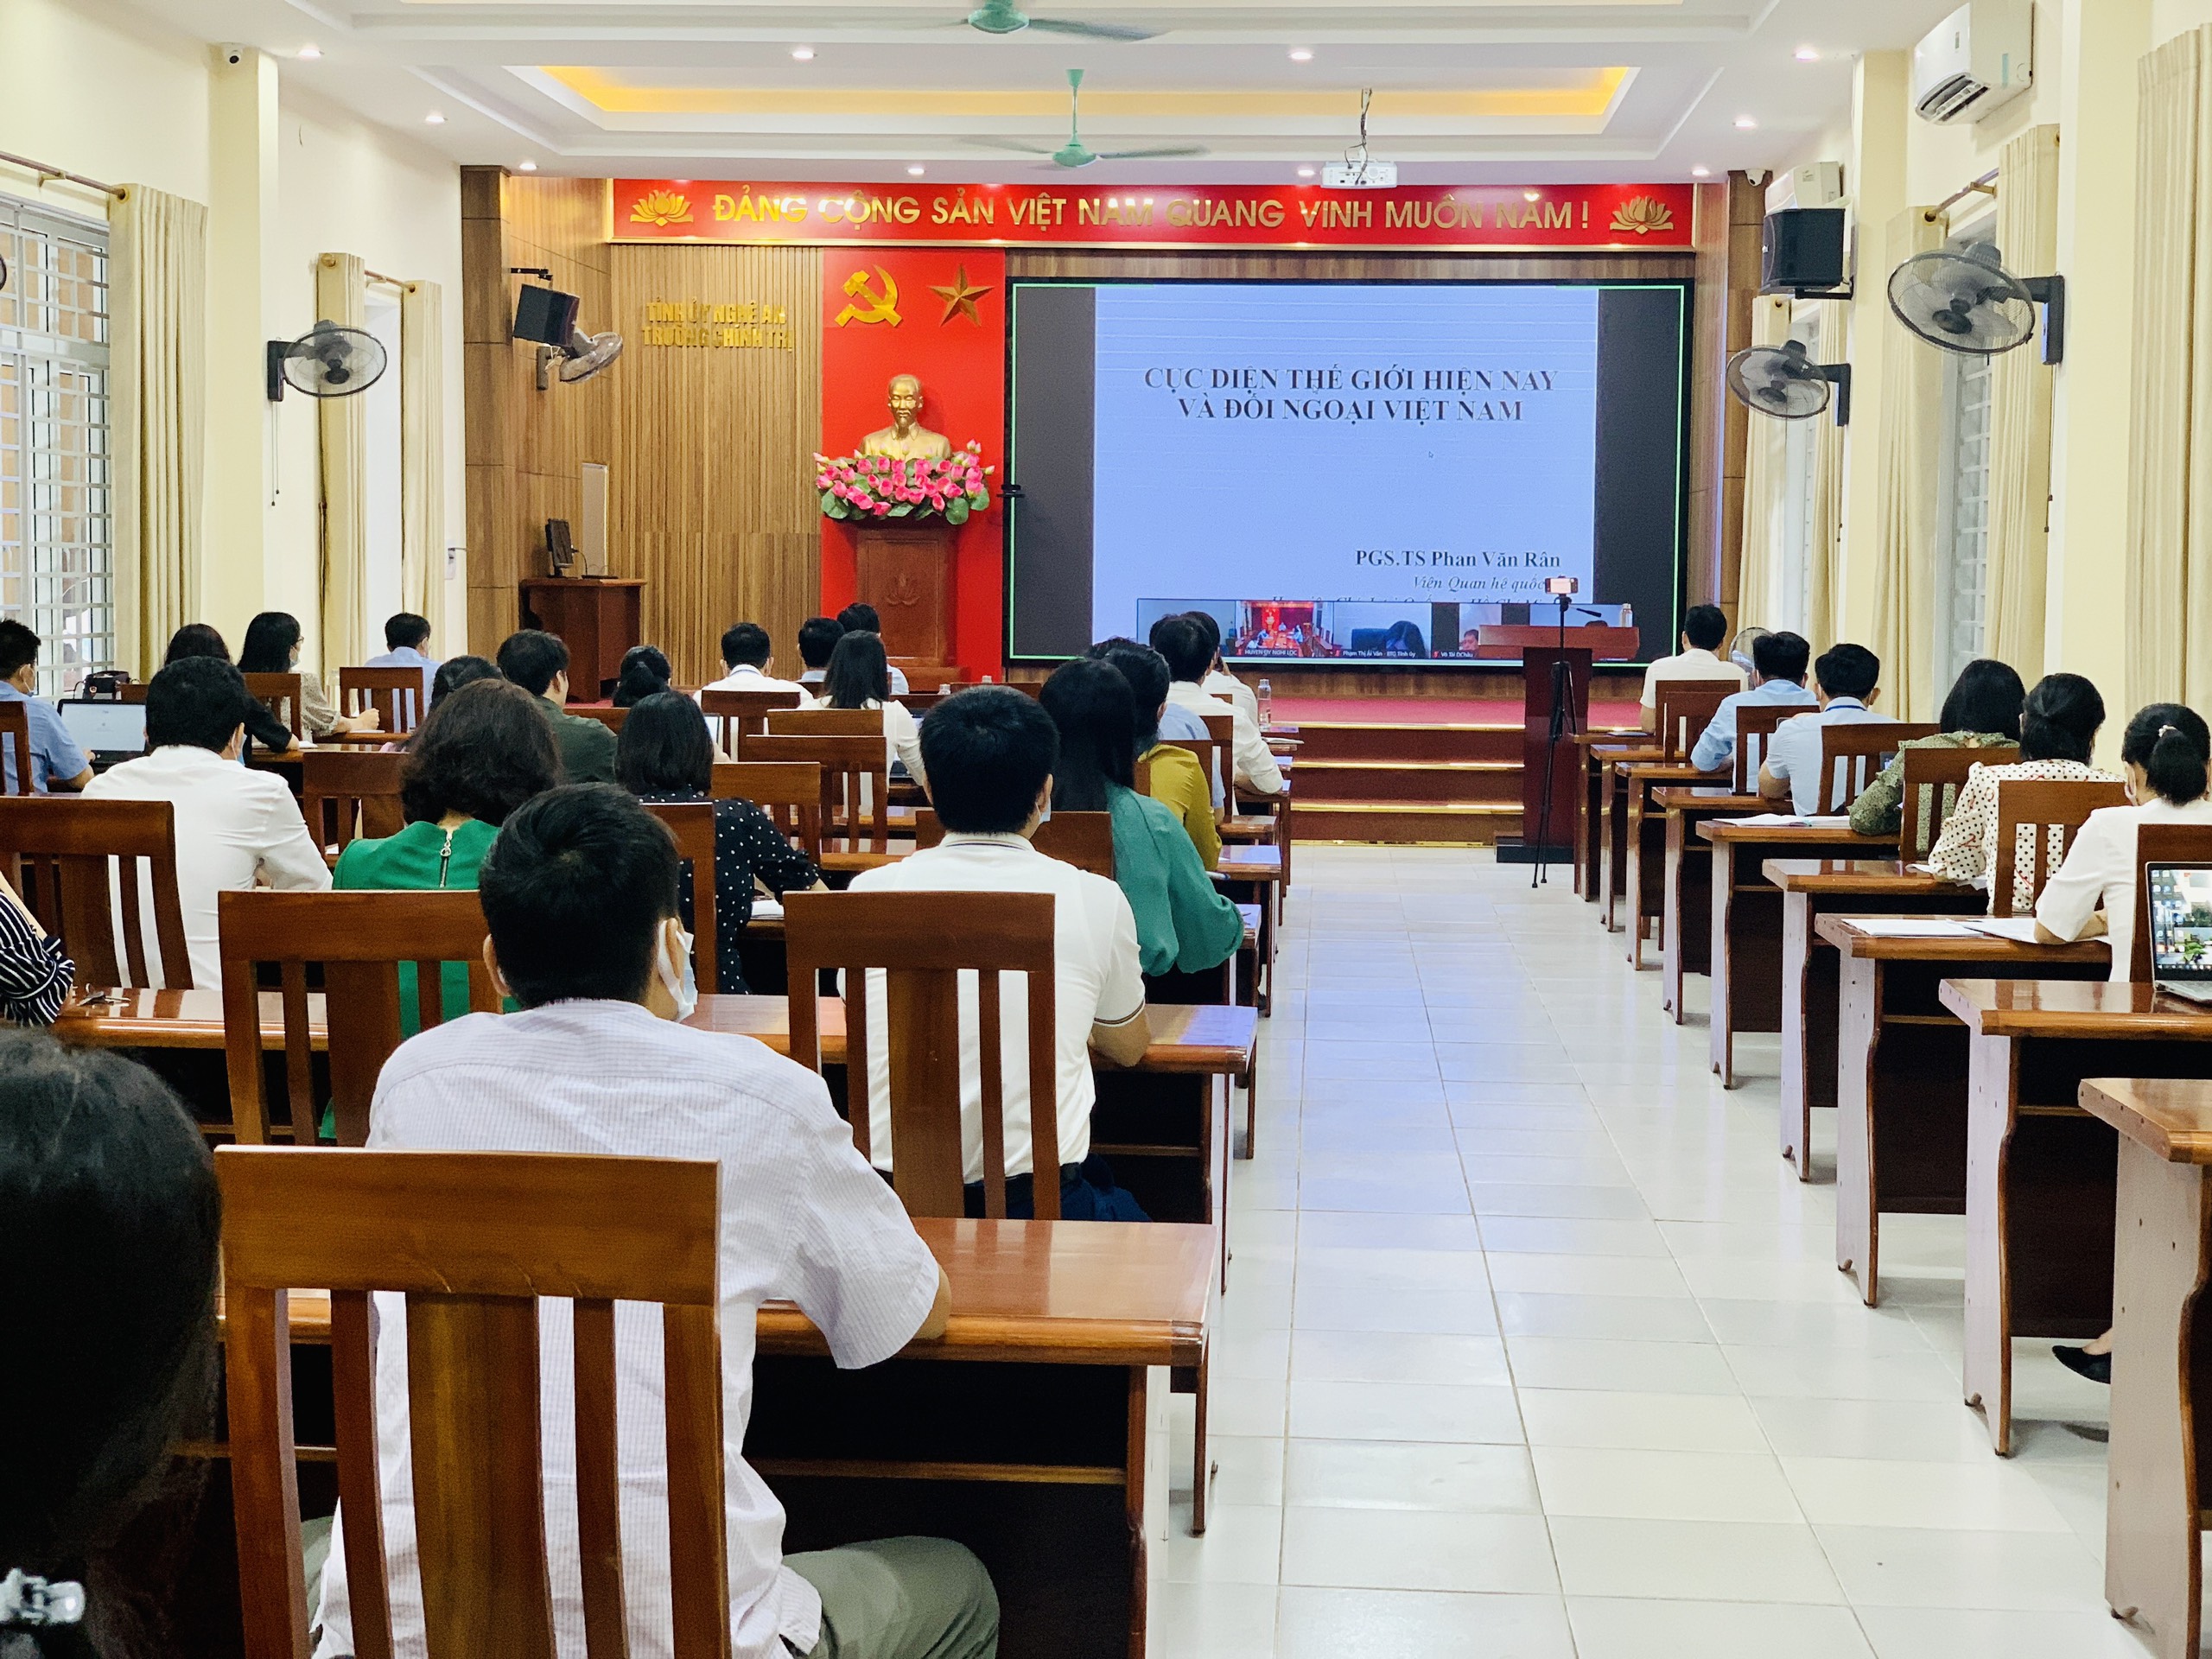 Hội nghị học tập chuyên đề: “Cục diện thế giới hiện nay và đối ngoại Việt Nam”